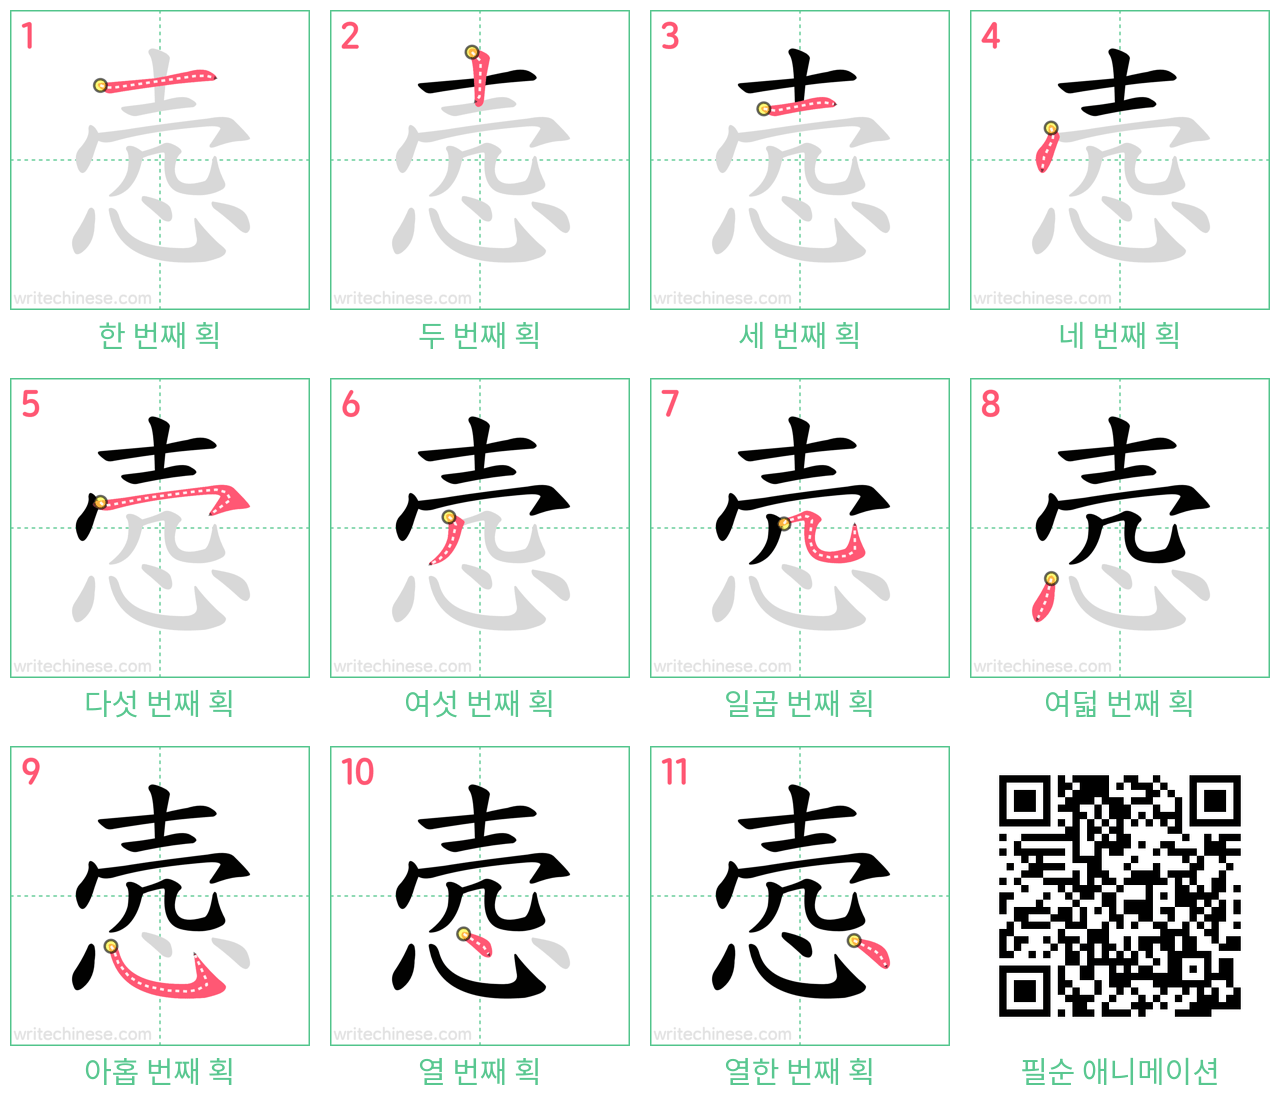 悫 step-by-step stroke order diagrams